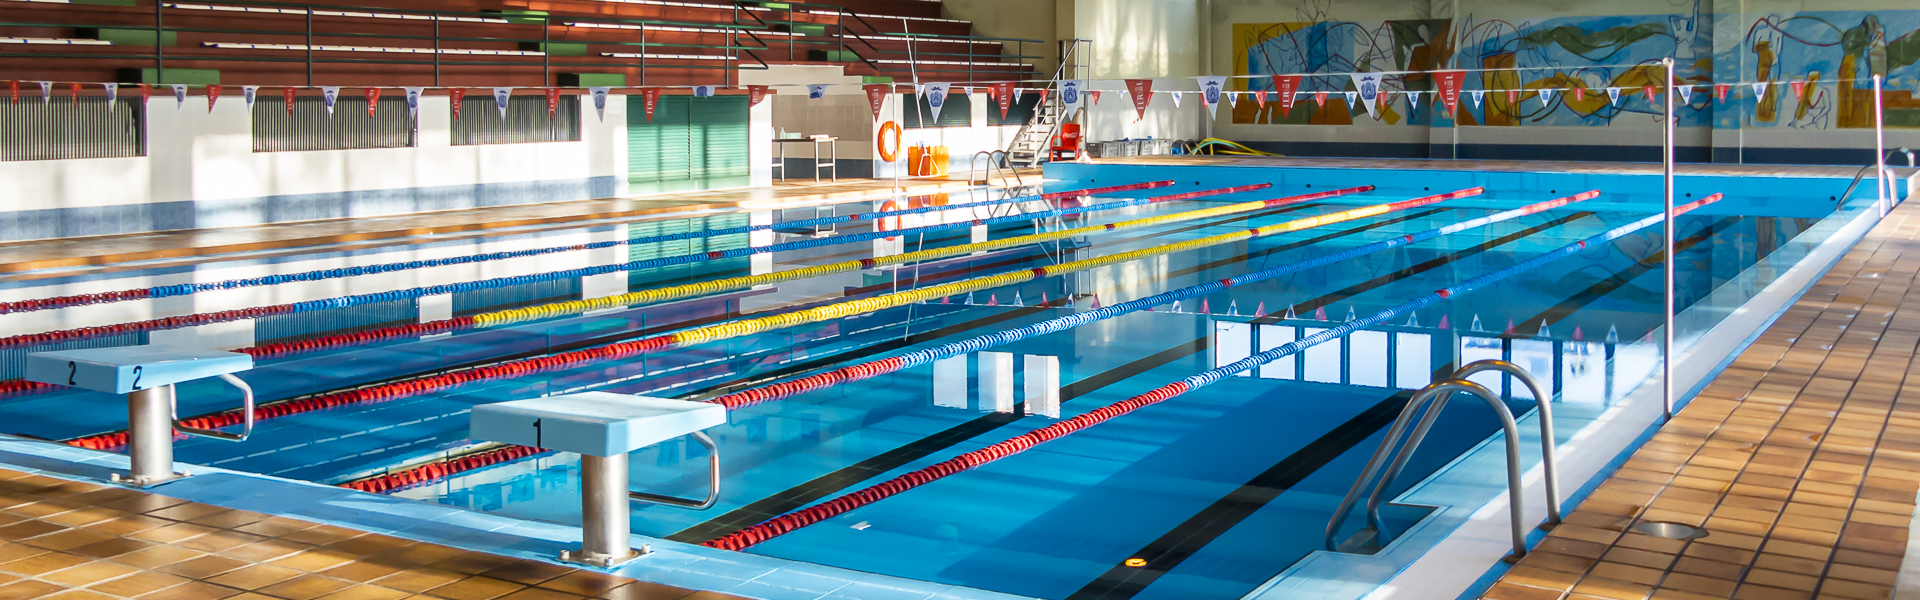  Escolas deportivas de natación/ Escuelas deportivas de natación